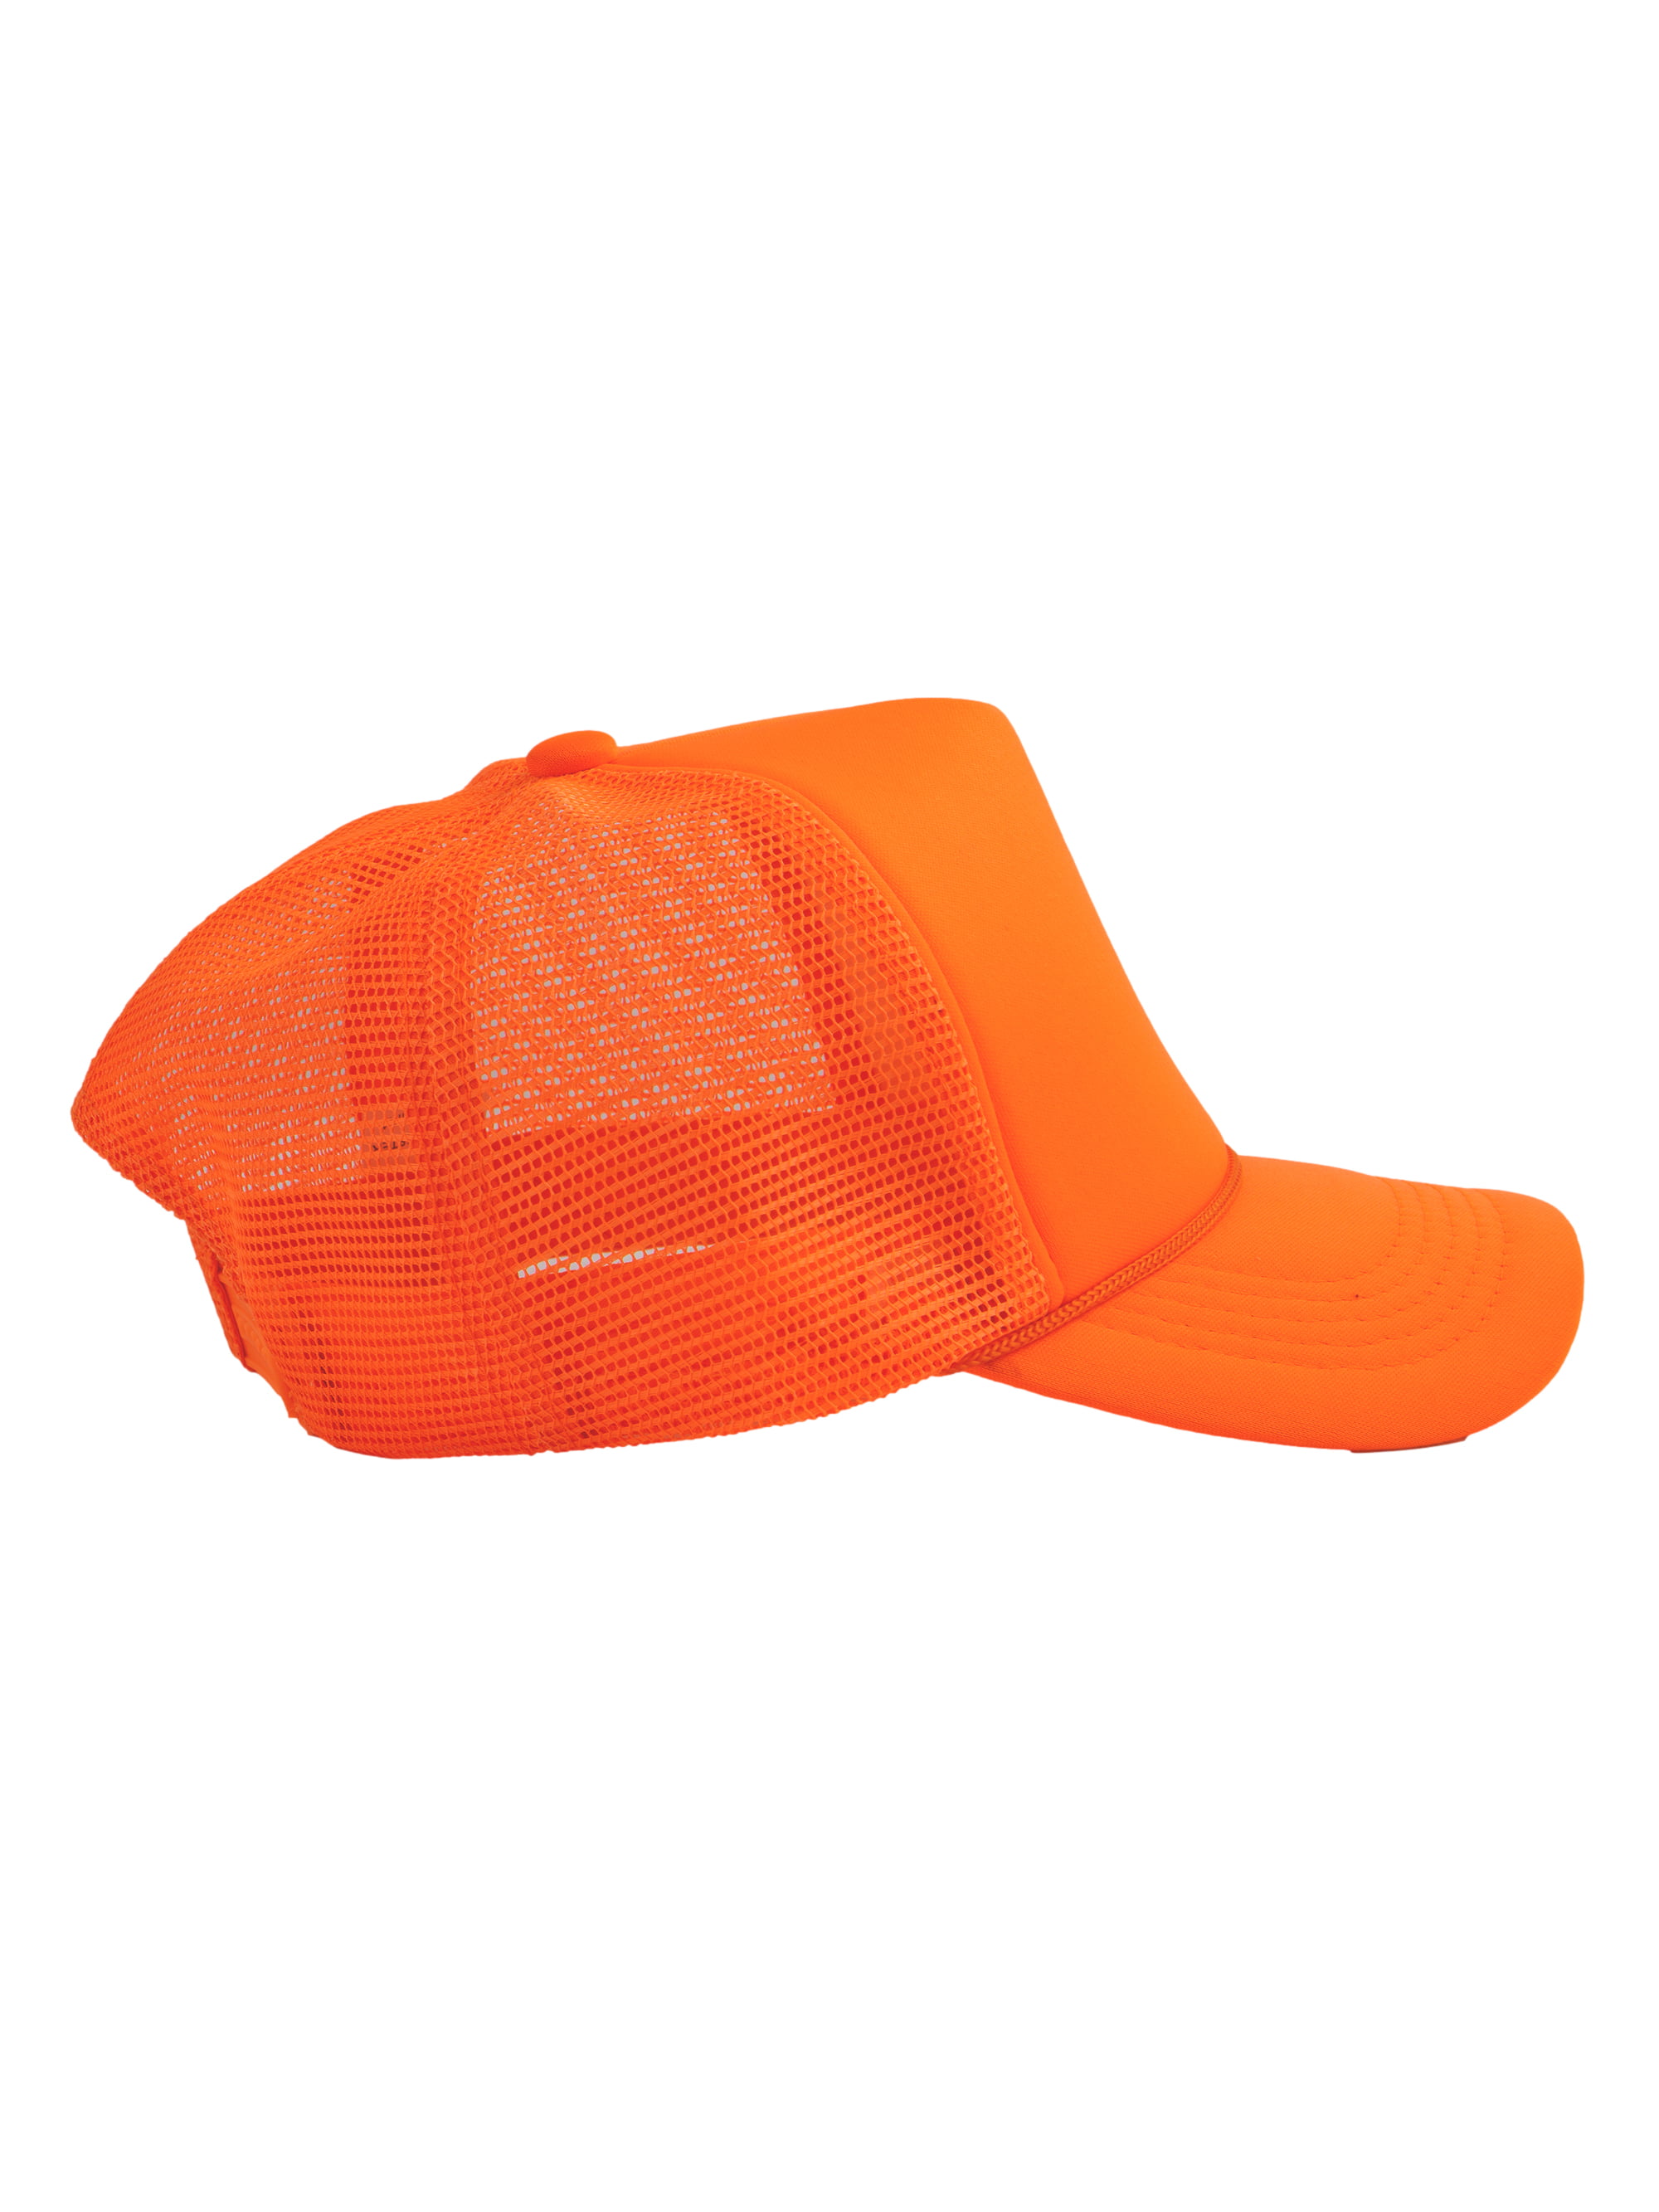 Trucker Top Hat Headwear Trucker Foam Neon Mens - Mesh Orange Snapback Blank Hats